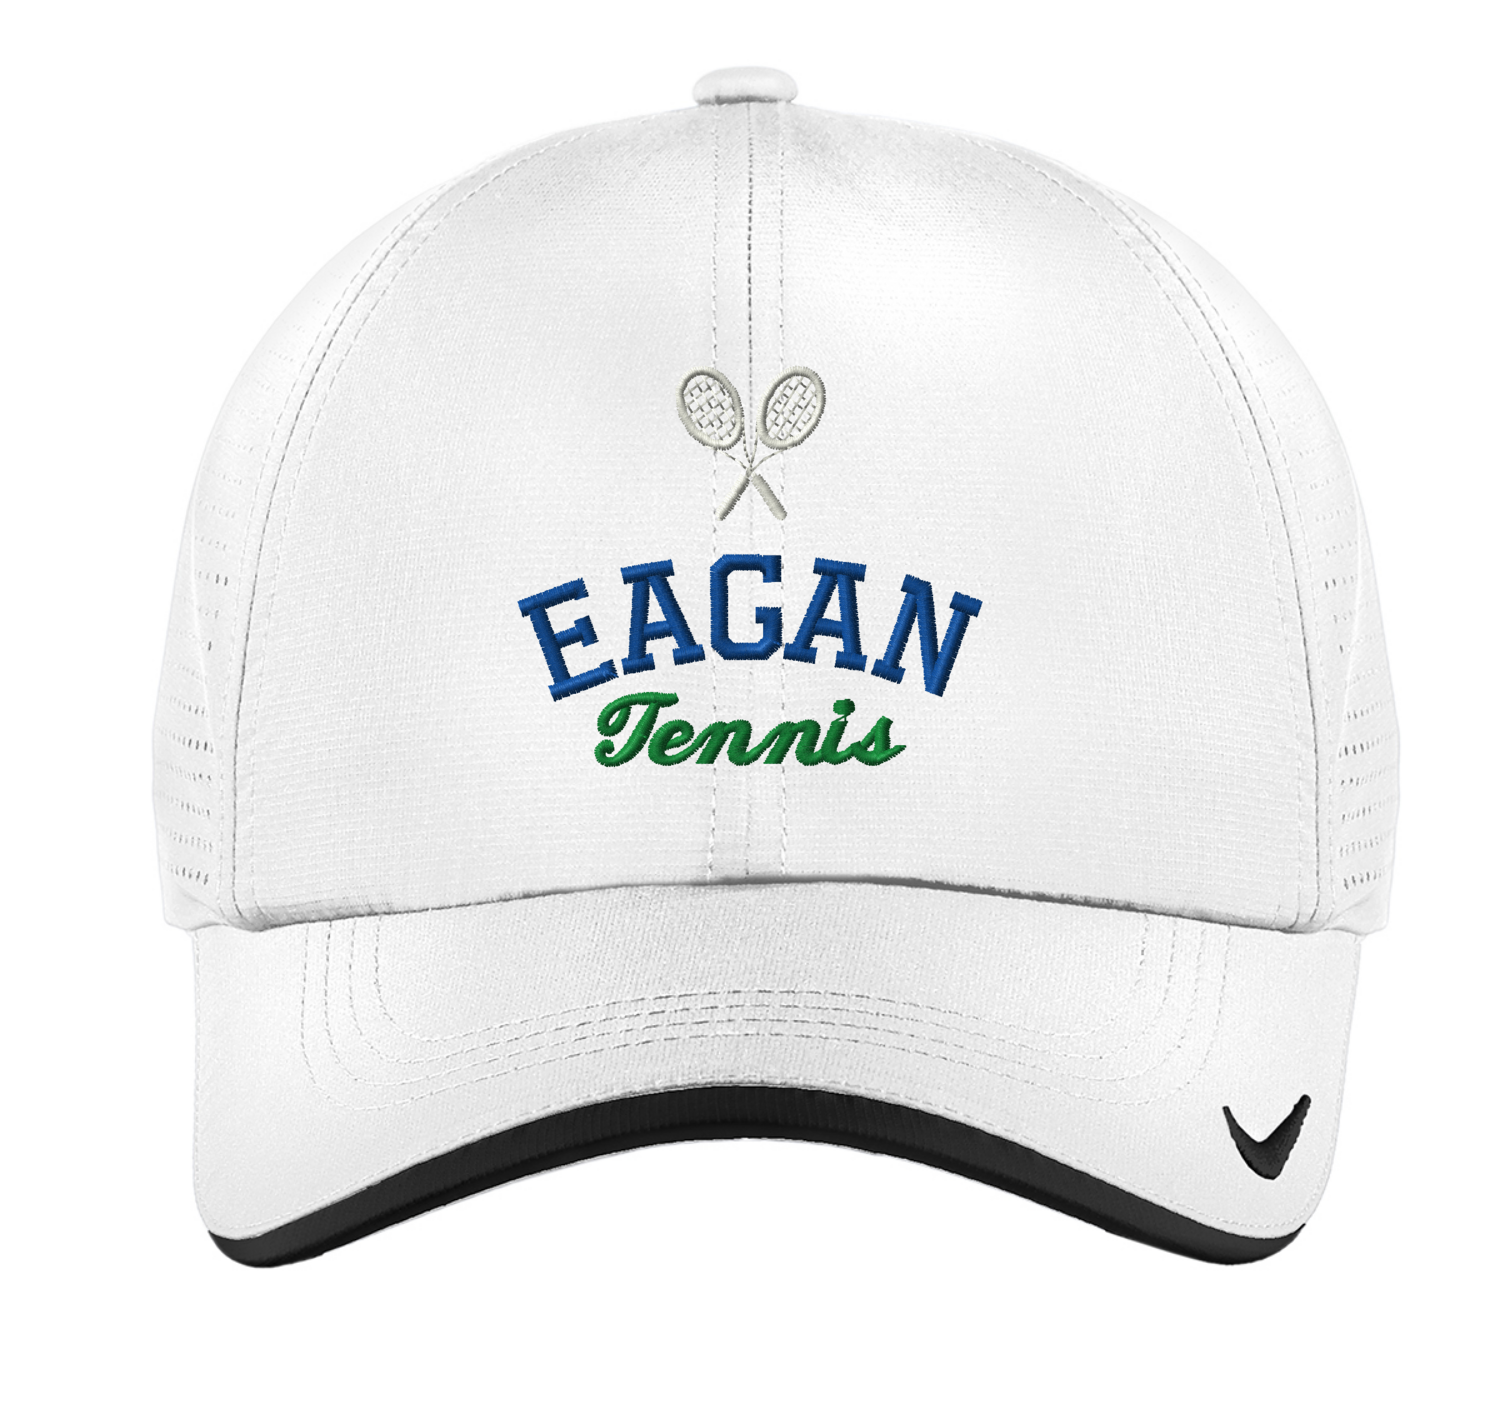 Eagan Tennis Nike Dri-FIT Swoosh Perforated Cap